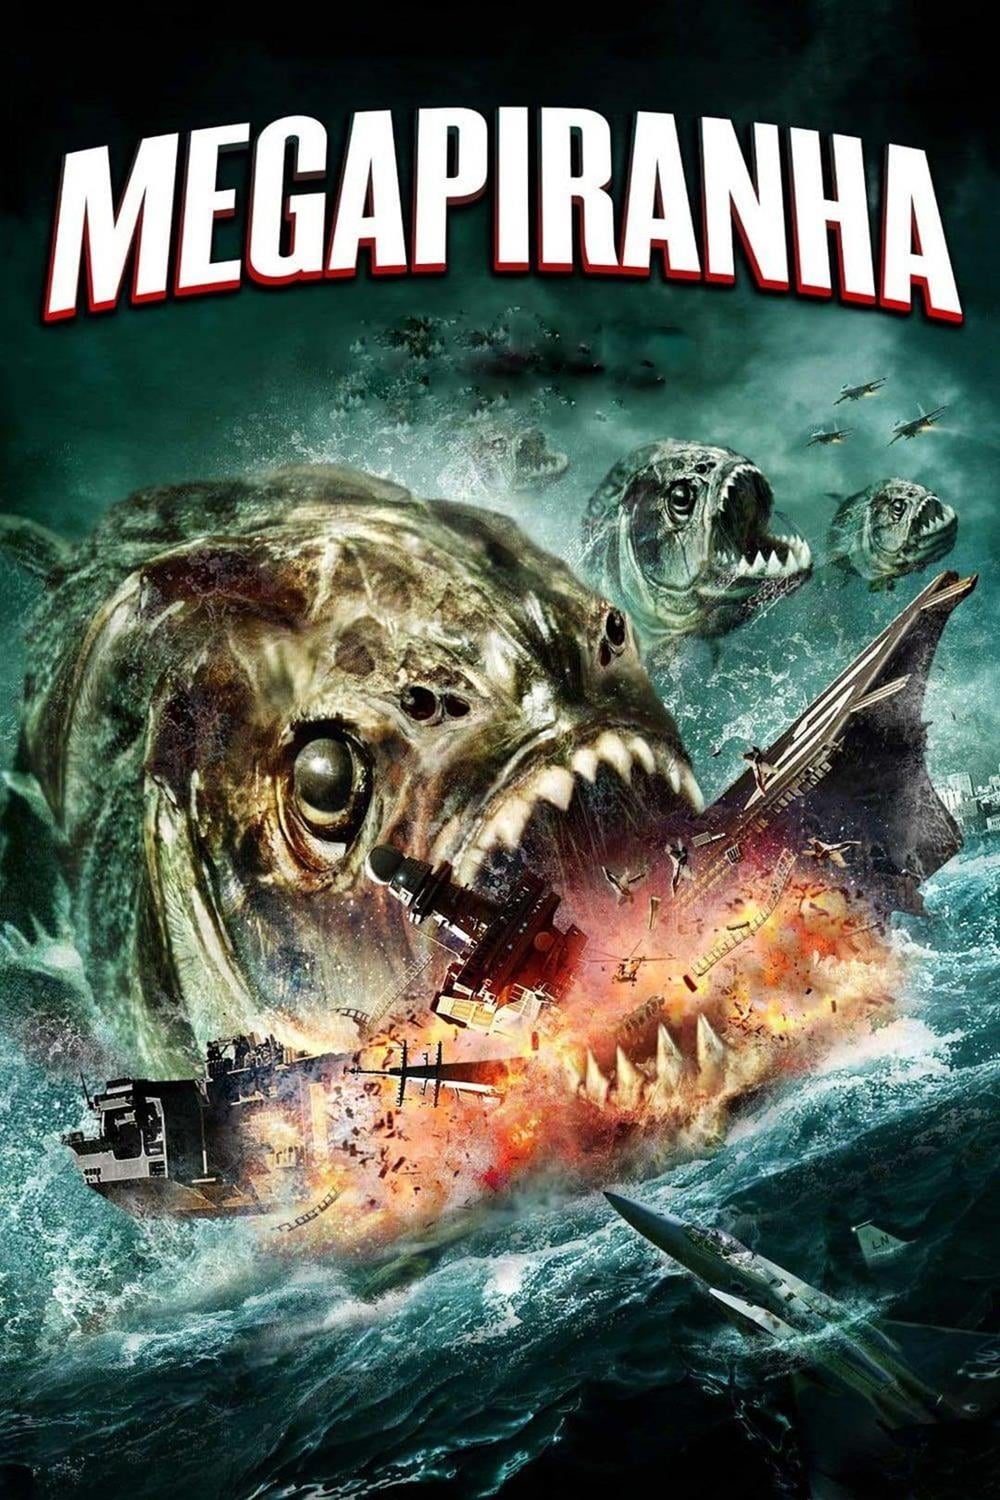 Mega Piranha (2010)